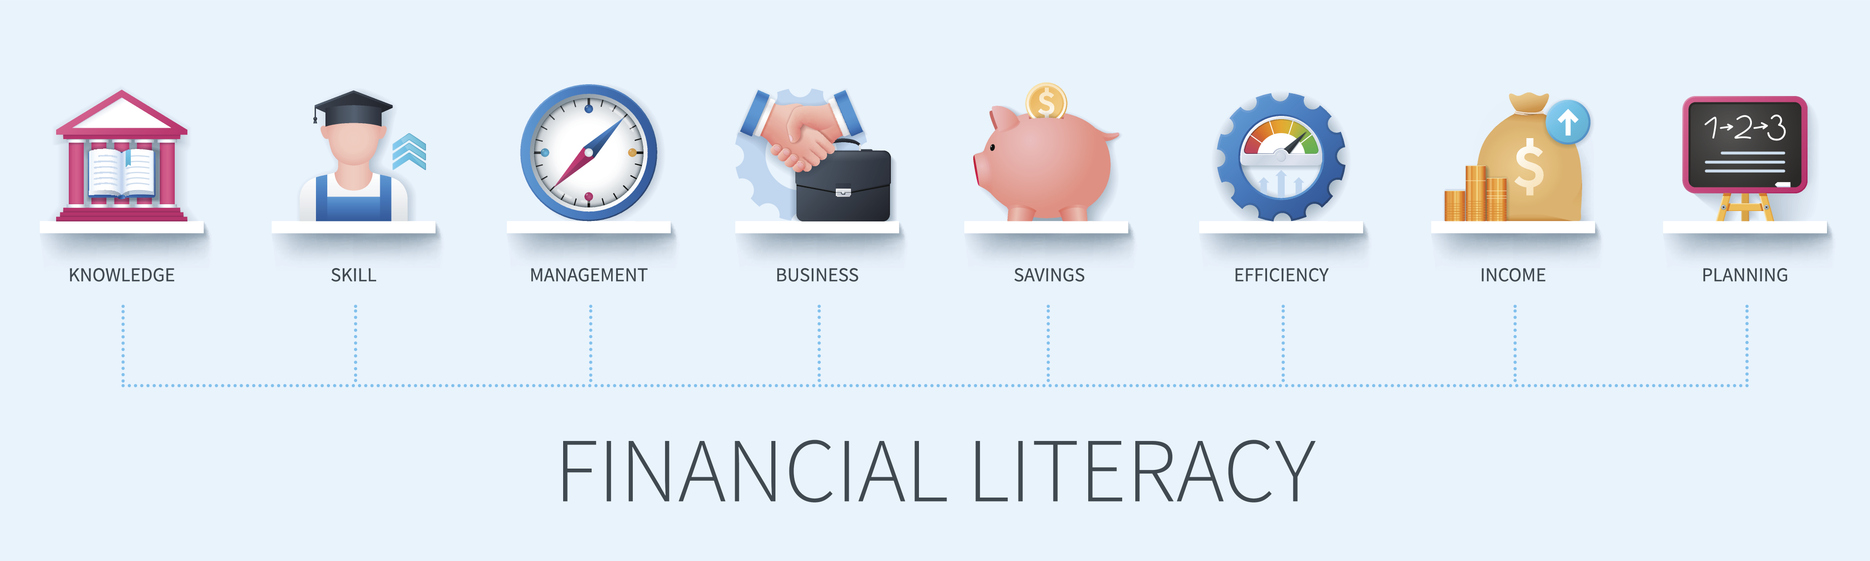 financial-literacy-month-april-lessons-education-social-studies-economics